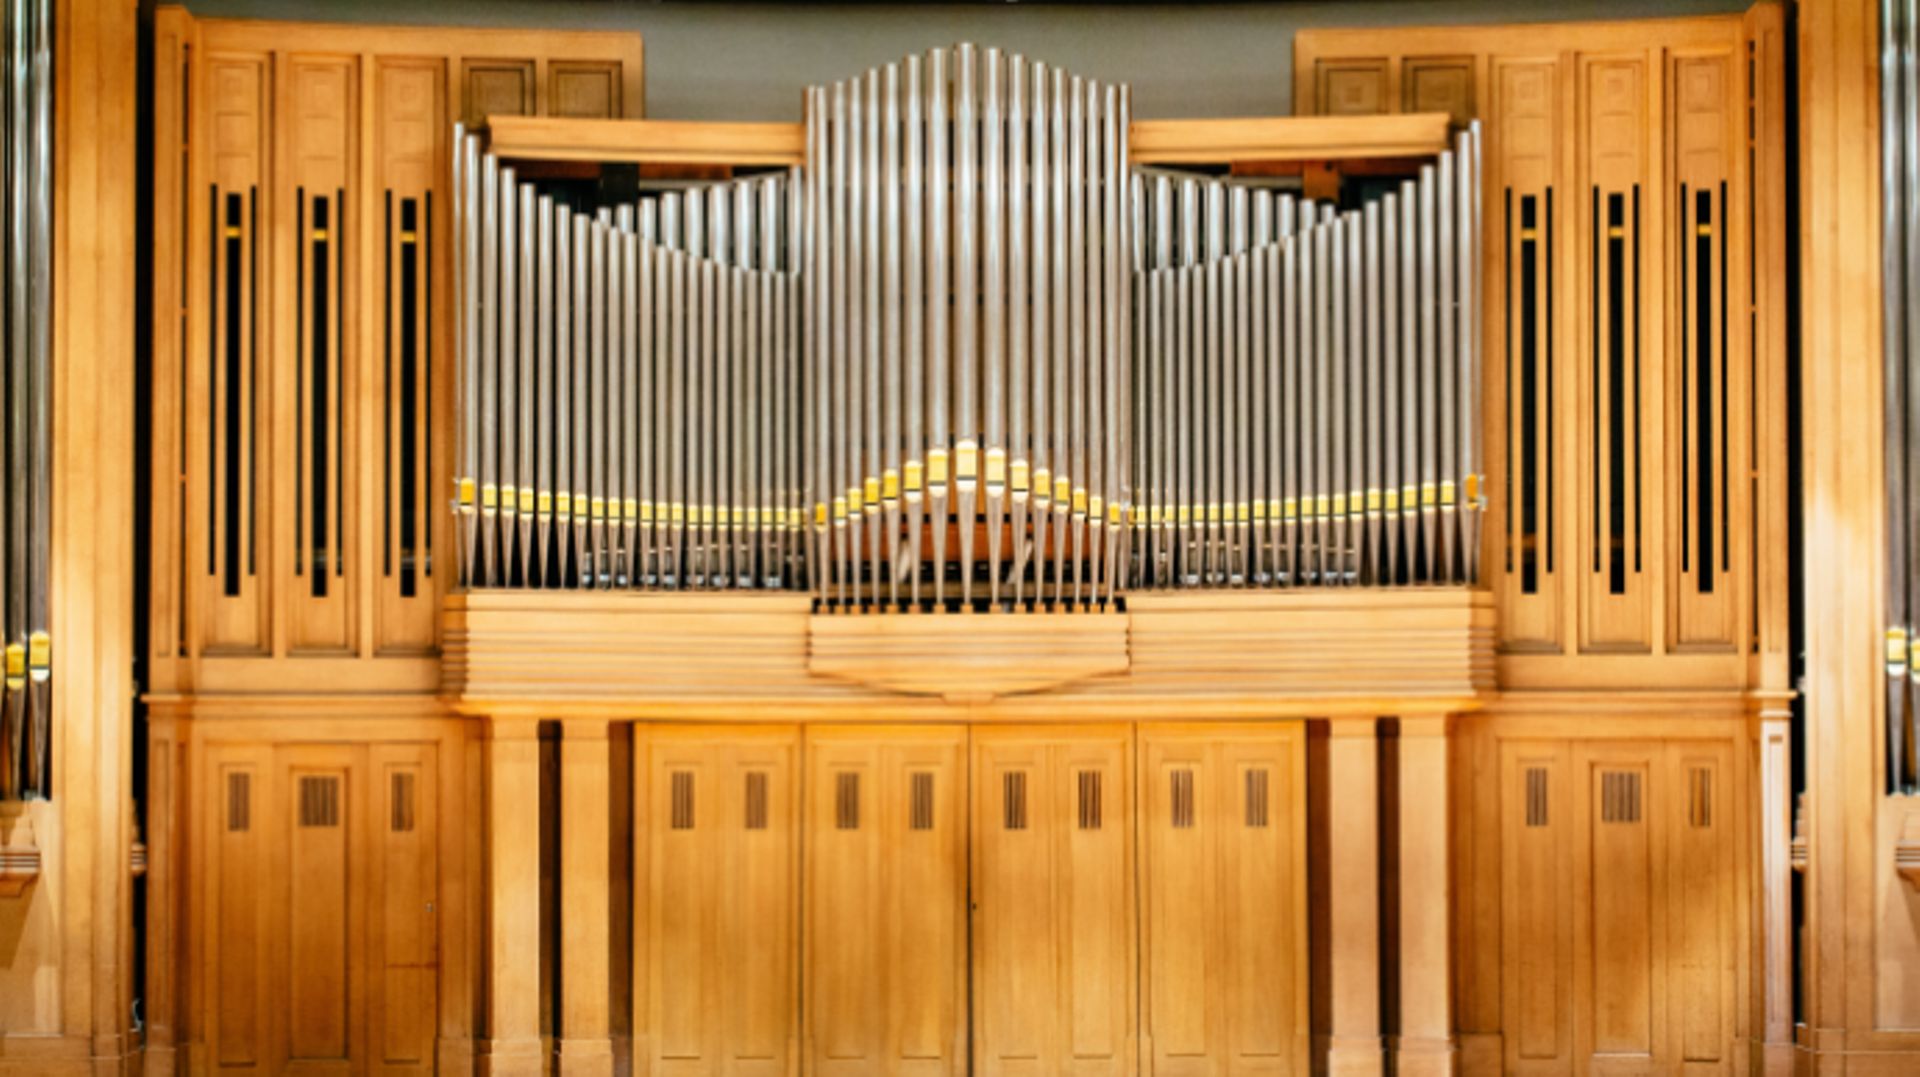  
L’orgue du Palais des beaux-arts, resté muet depuis près de 50 ans, a été entièrement restauré et s'apprête à jouer à nouveau.

